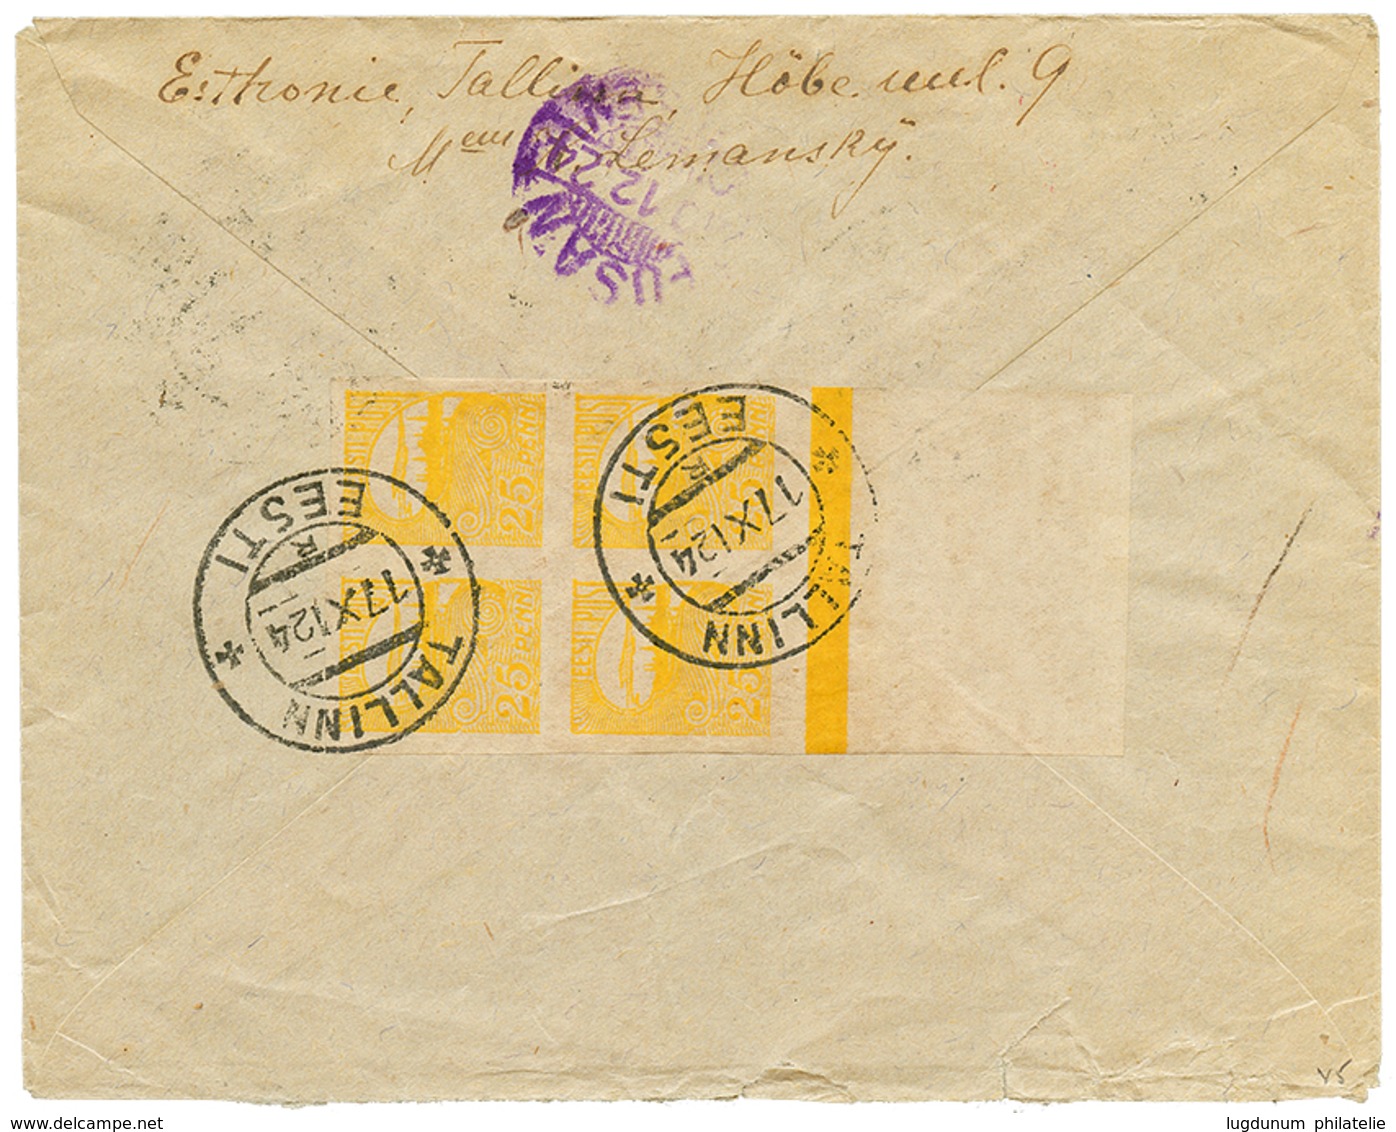 758 ESTONIA To KOREA : 1924 9m + 25p Block Of 4(reverse) Canc. TALLINN EESTI On Taxed Envelope To KINSEN KOREA. Extremel - Creta